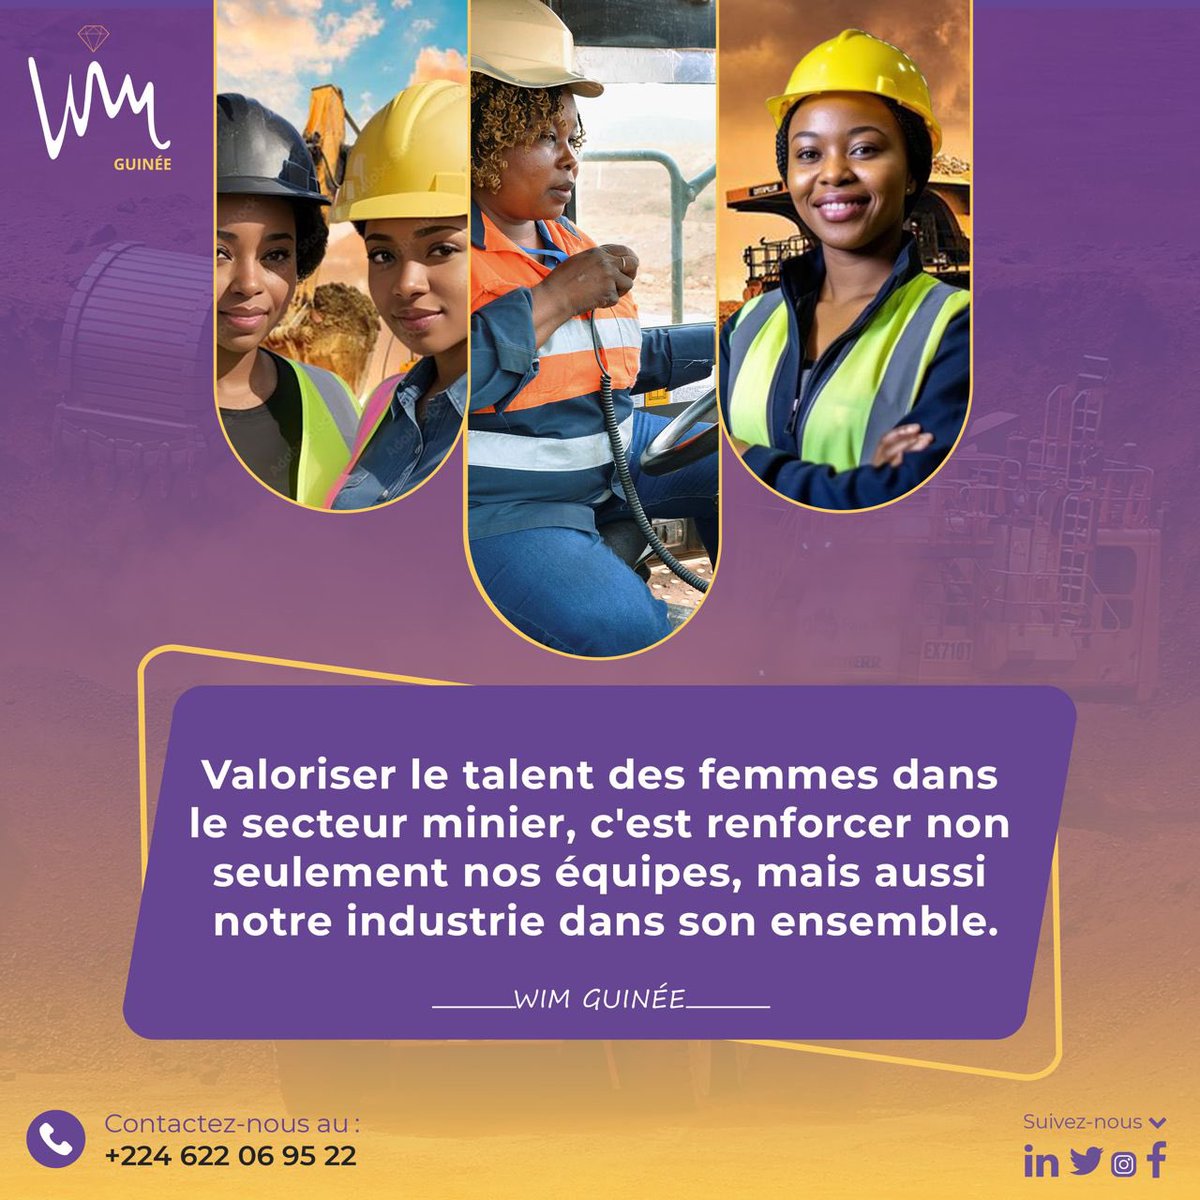 Les femmes représentent une source inexploitée de talent et de potentiel dans le secteur minier.

#womeninmining #MiningEquality #MiningLeadership #IFCConnectedCommunities #CommunityBusinesses #GenderInclusion #IFCGender #SustainableMining #CBG #RioTinto #GAC #iwim